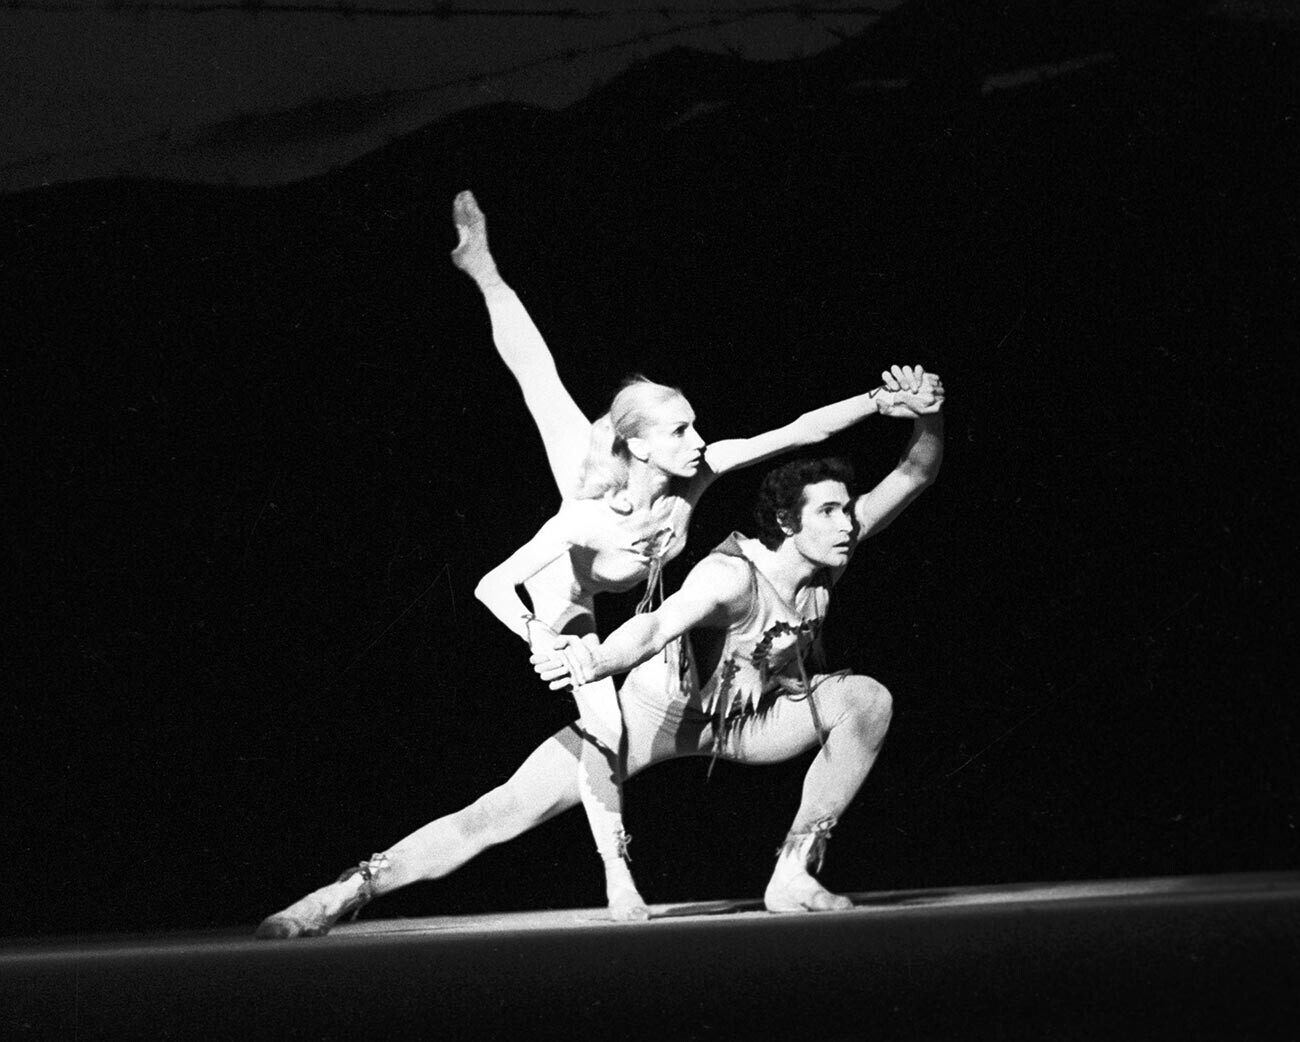 Ansambel Balet Leningrad, penari Anna Osipova dan John Markovsky dalam sebuah adegan dari balet Broken Song (1979).